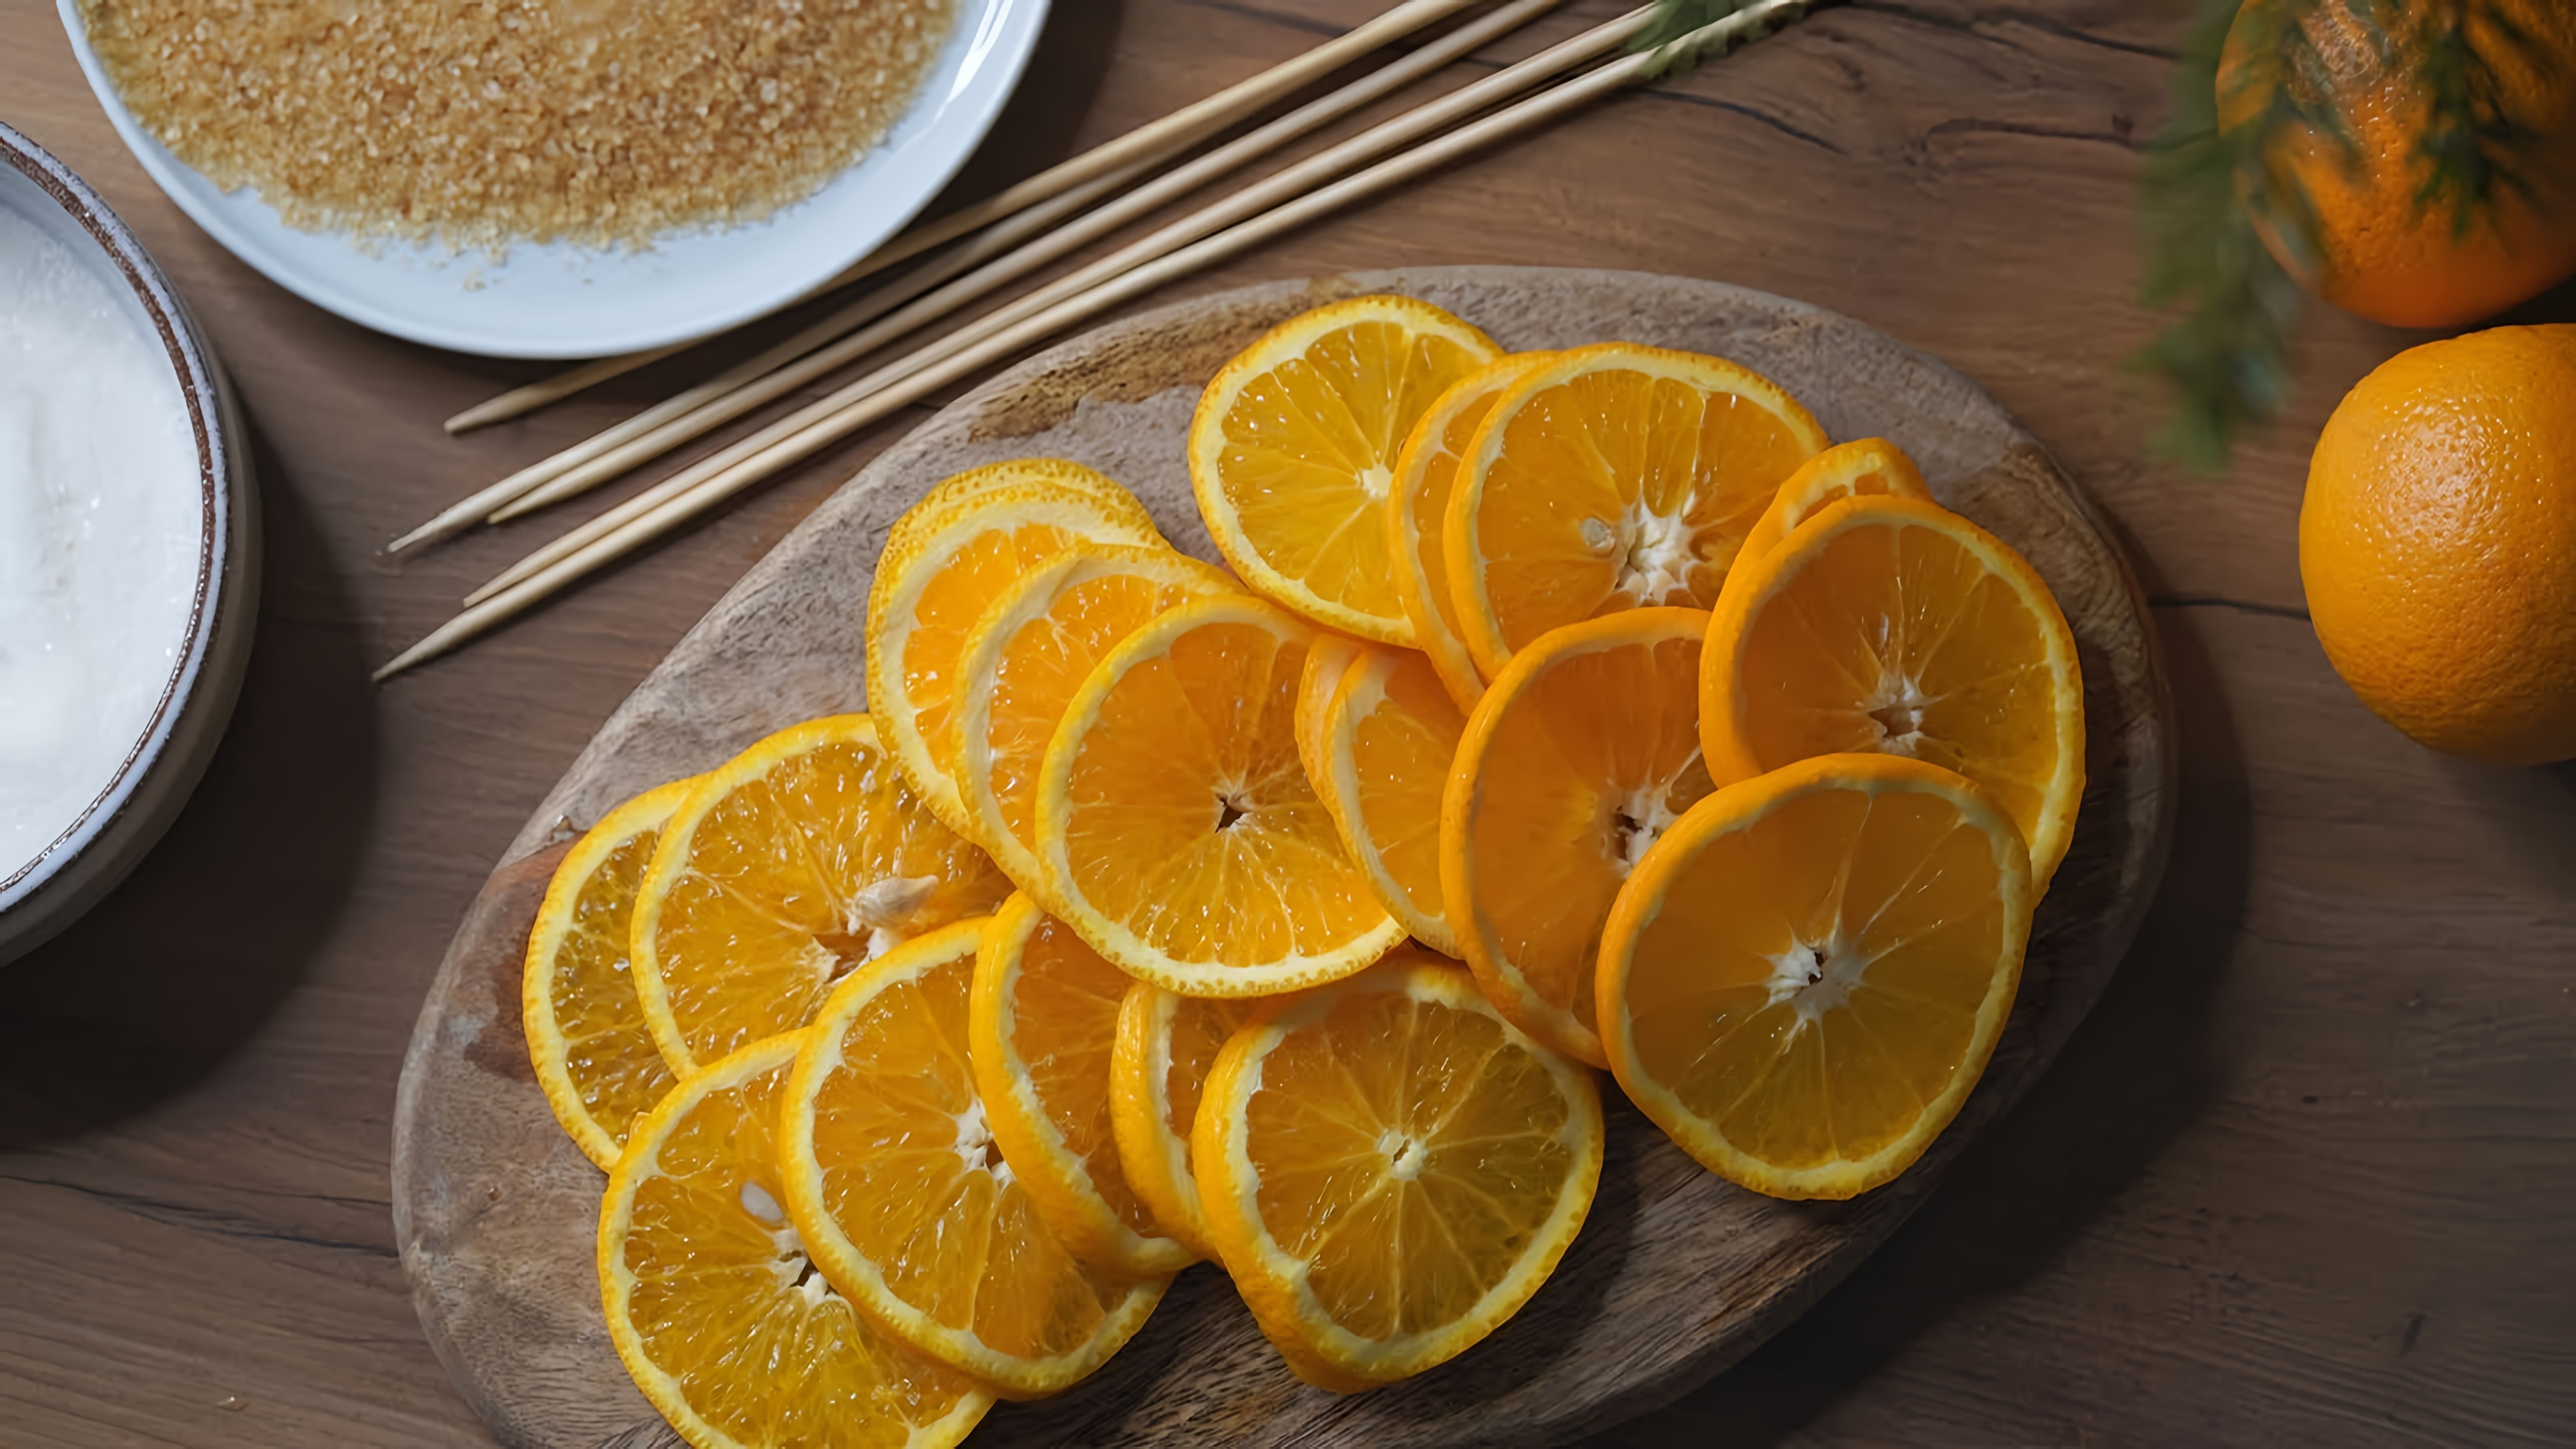 В этом видео показано, как засушить апельсиновые дольки для использования в качестве новогоднего декора